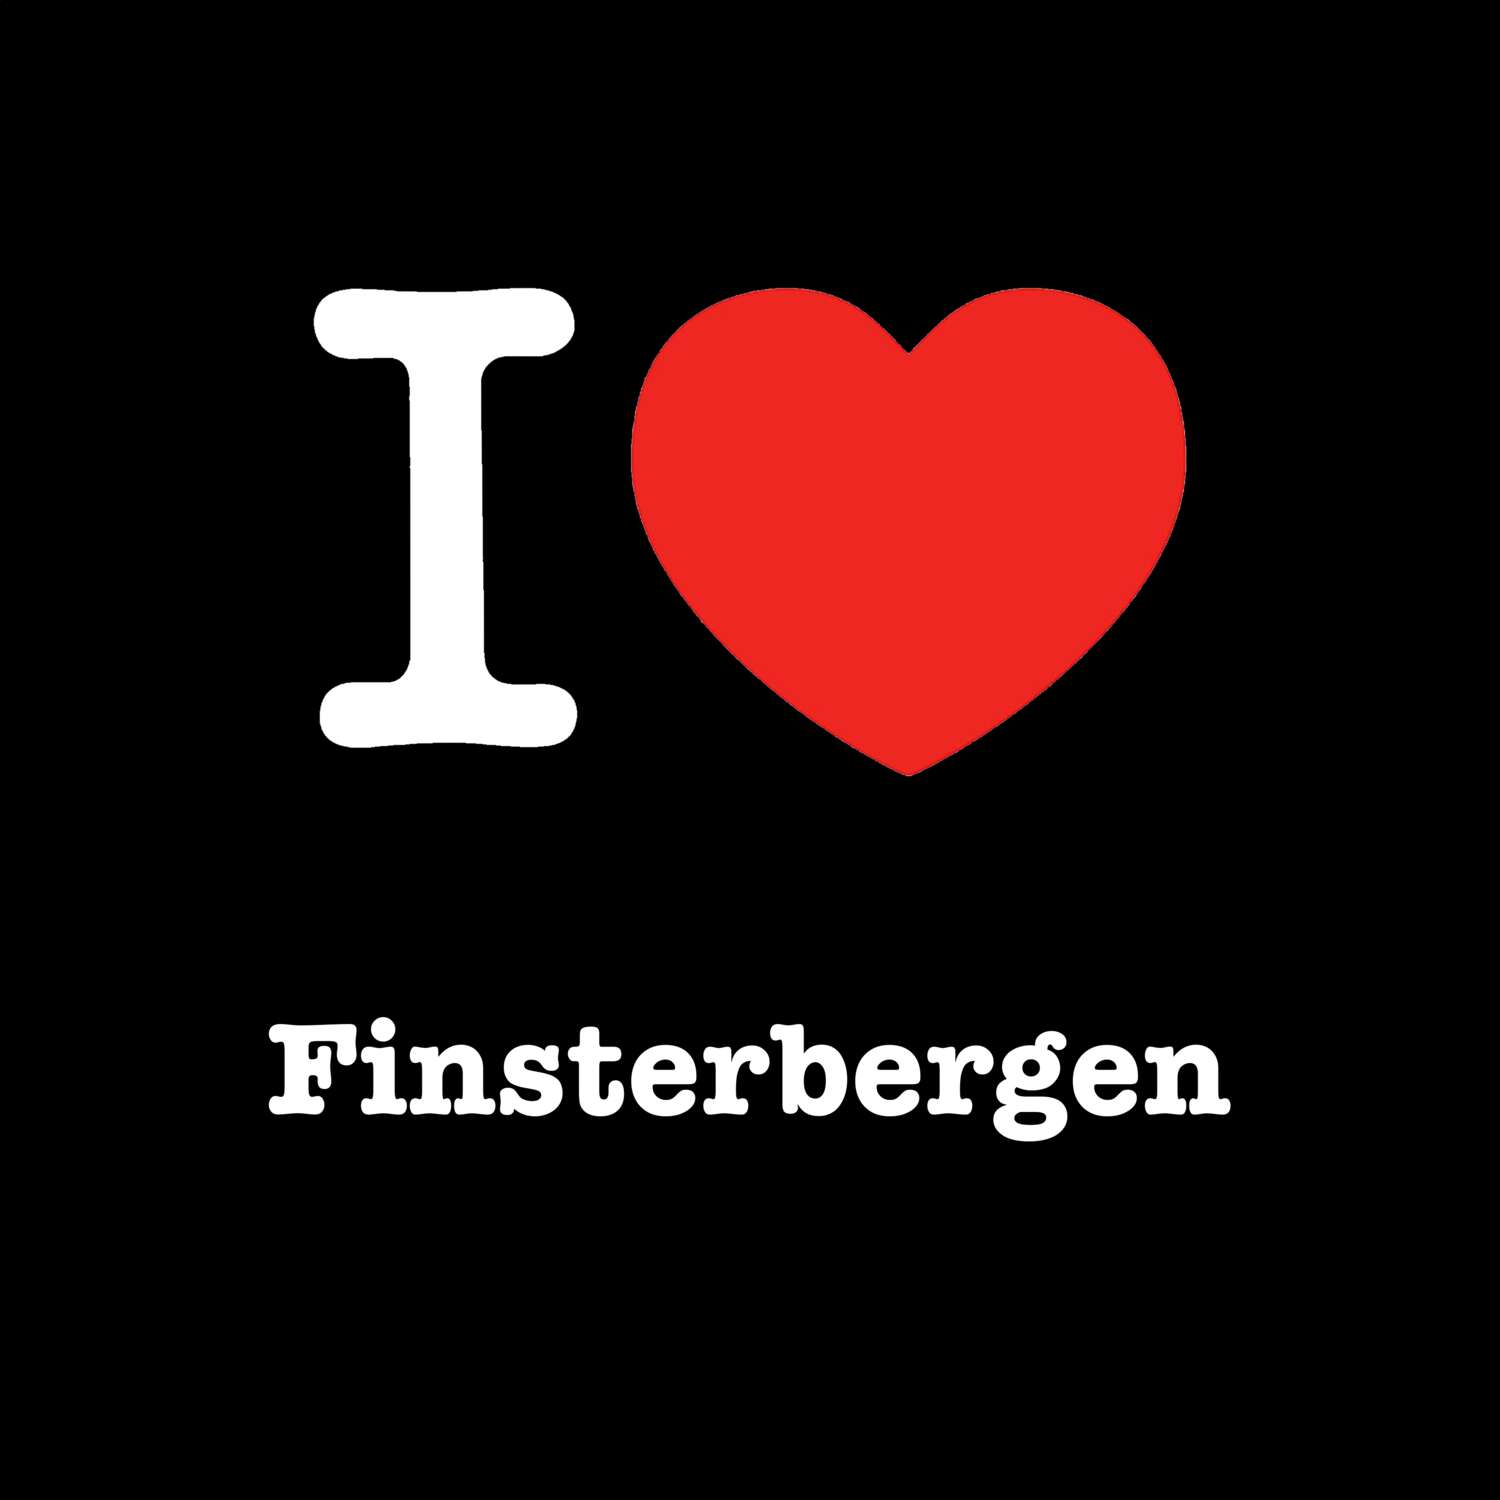 Finsterbergen T-Shirt »I love«